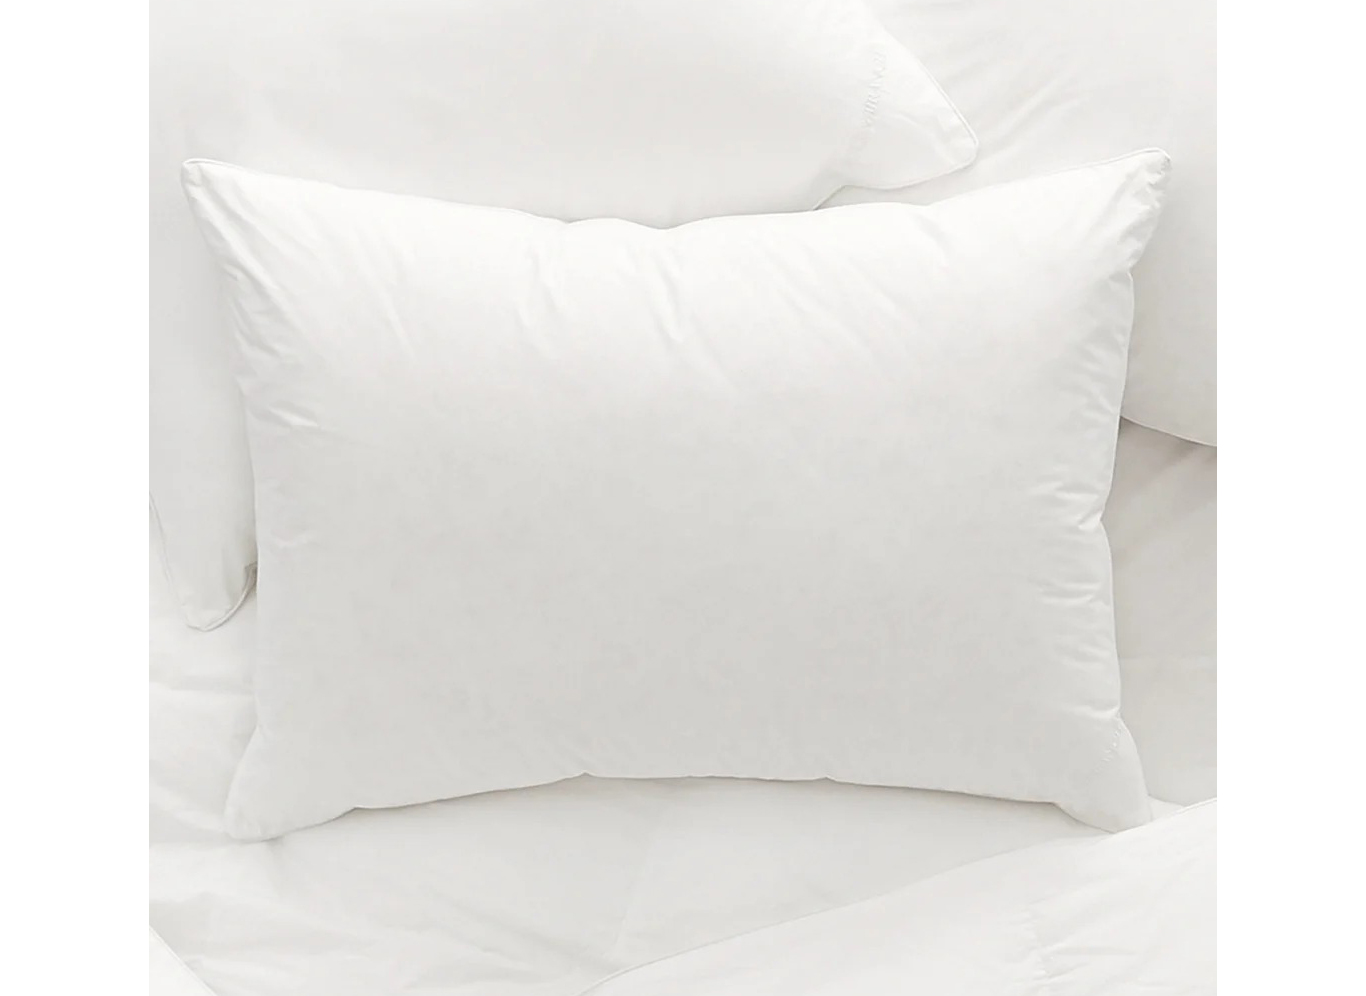 Pillows: Boll & Branch Down Alternative Pillow